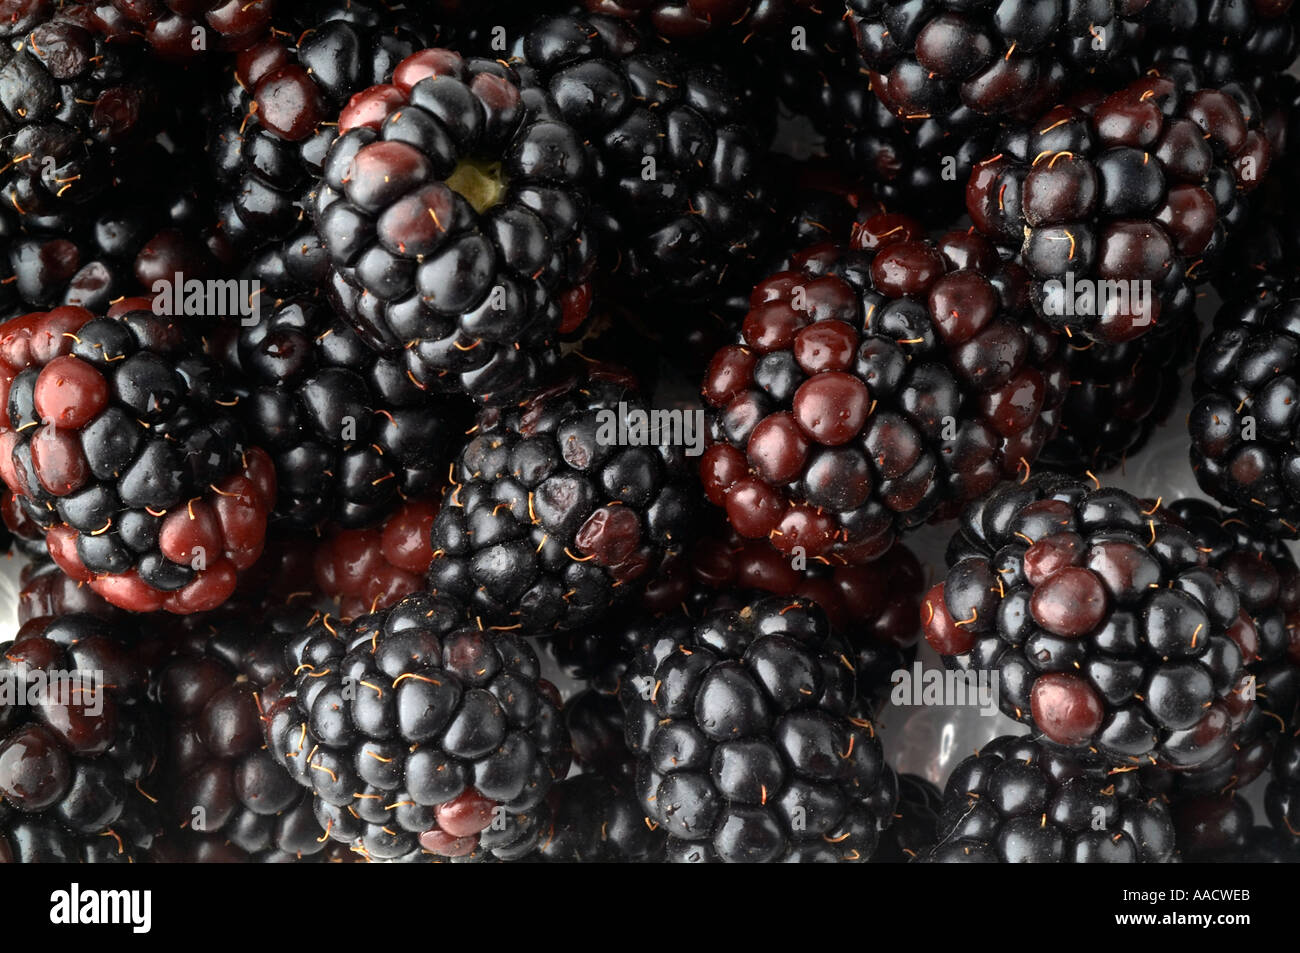 blackberry blackberries blackberry blackberries black blackberrys blue berry blueberry blueberries blueberrys Berry berries fru Stock Photo